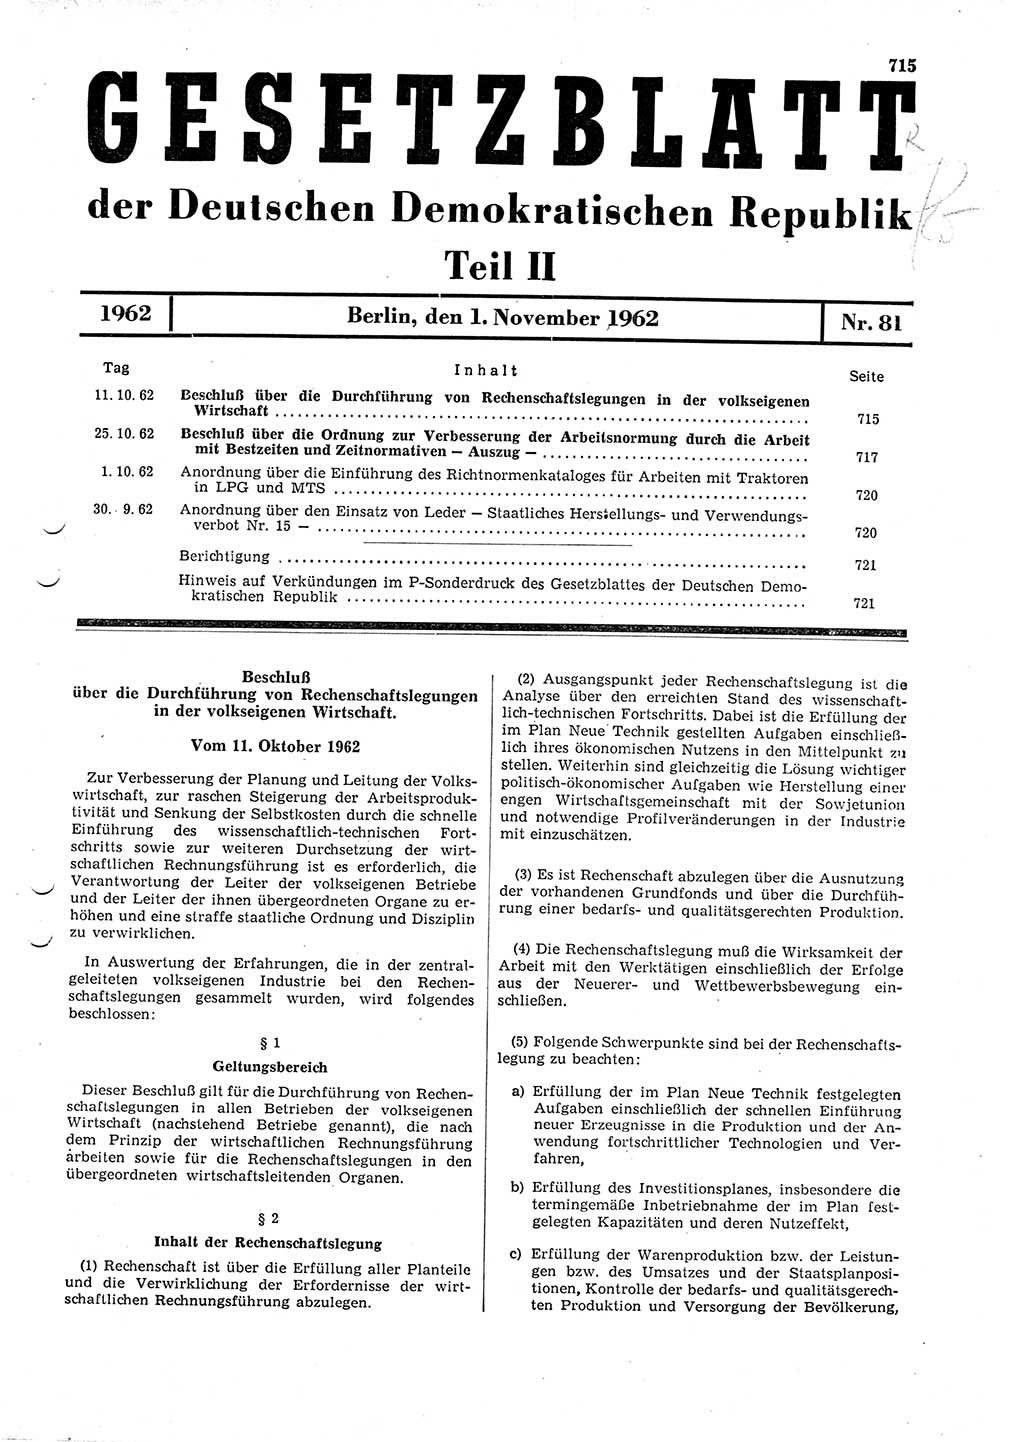 Gesetzblatt (GBl.) der Deutschen Demokratischen Republik (DDR) Teil ⅠⅠ 1962, Seite 715 (GBl. DDR ⅠⅠ 1962, S. 715)